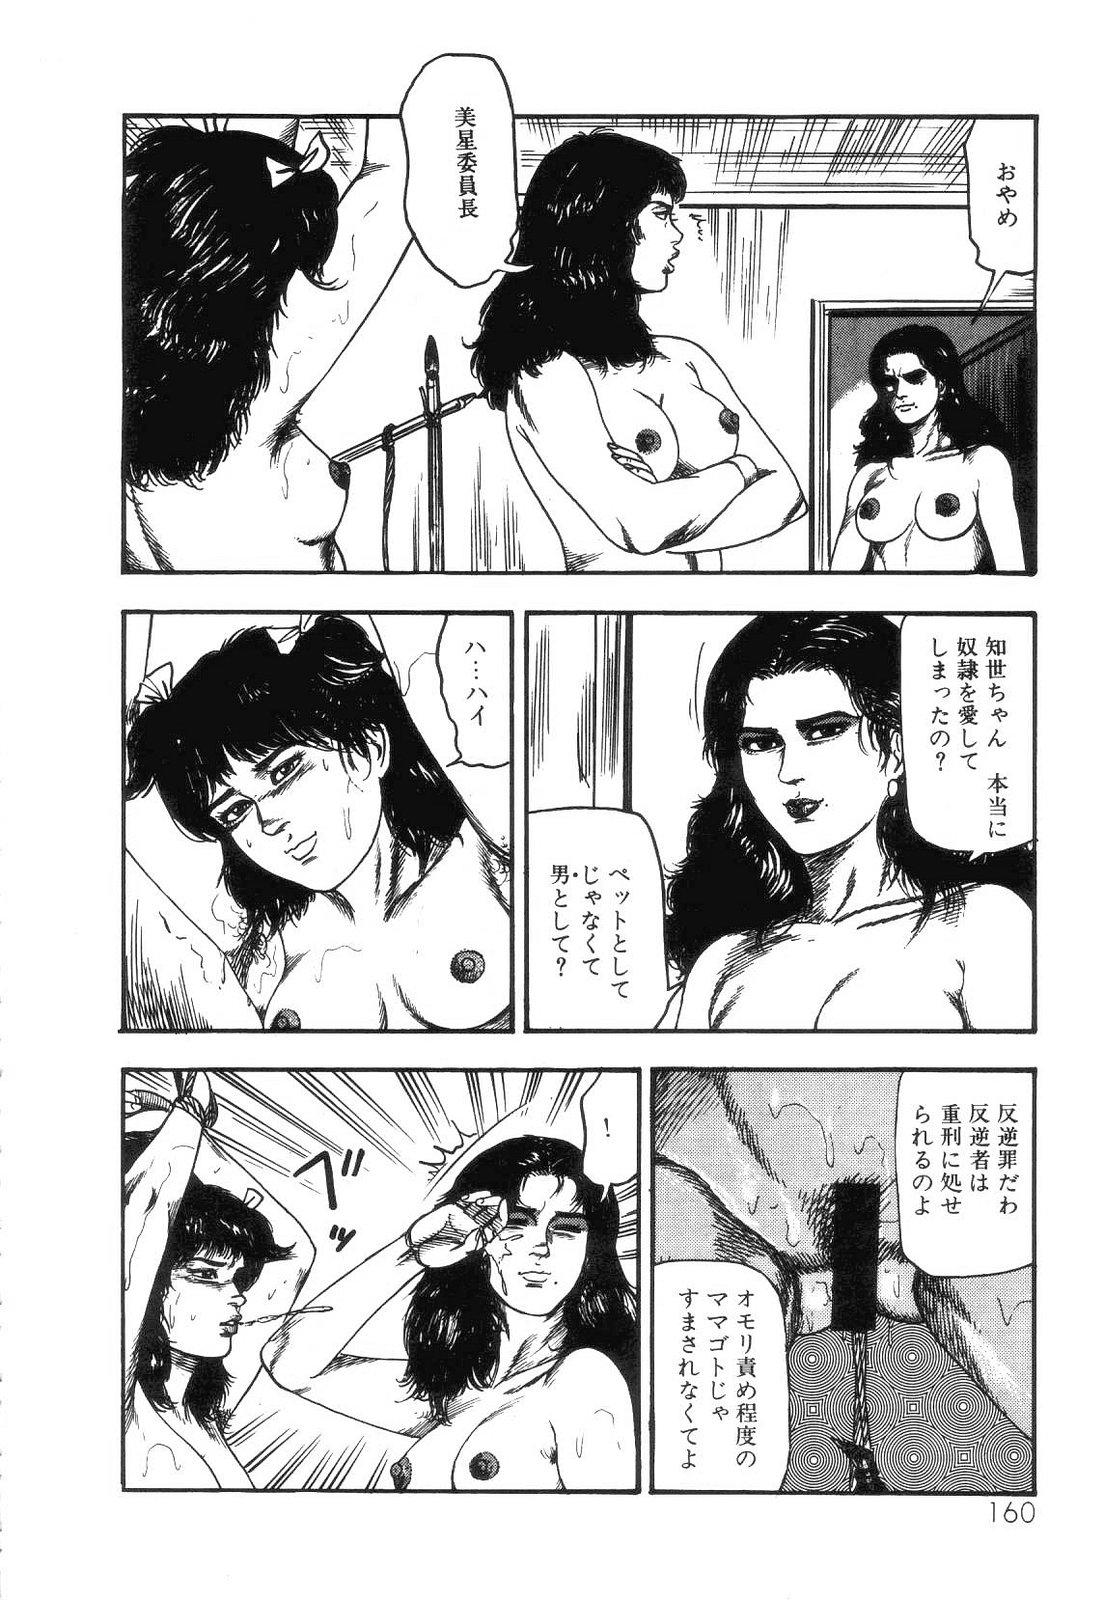 Shiro no Mokushiroku Vol. 4 - Bichiku Karen no Shou 161